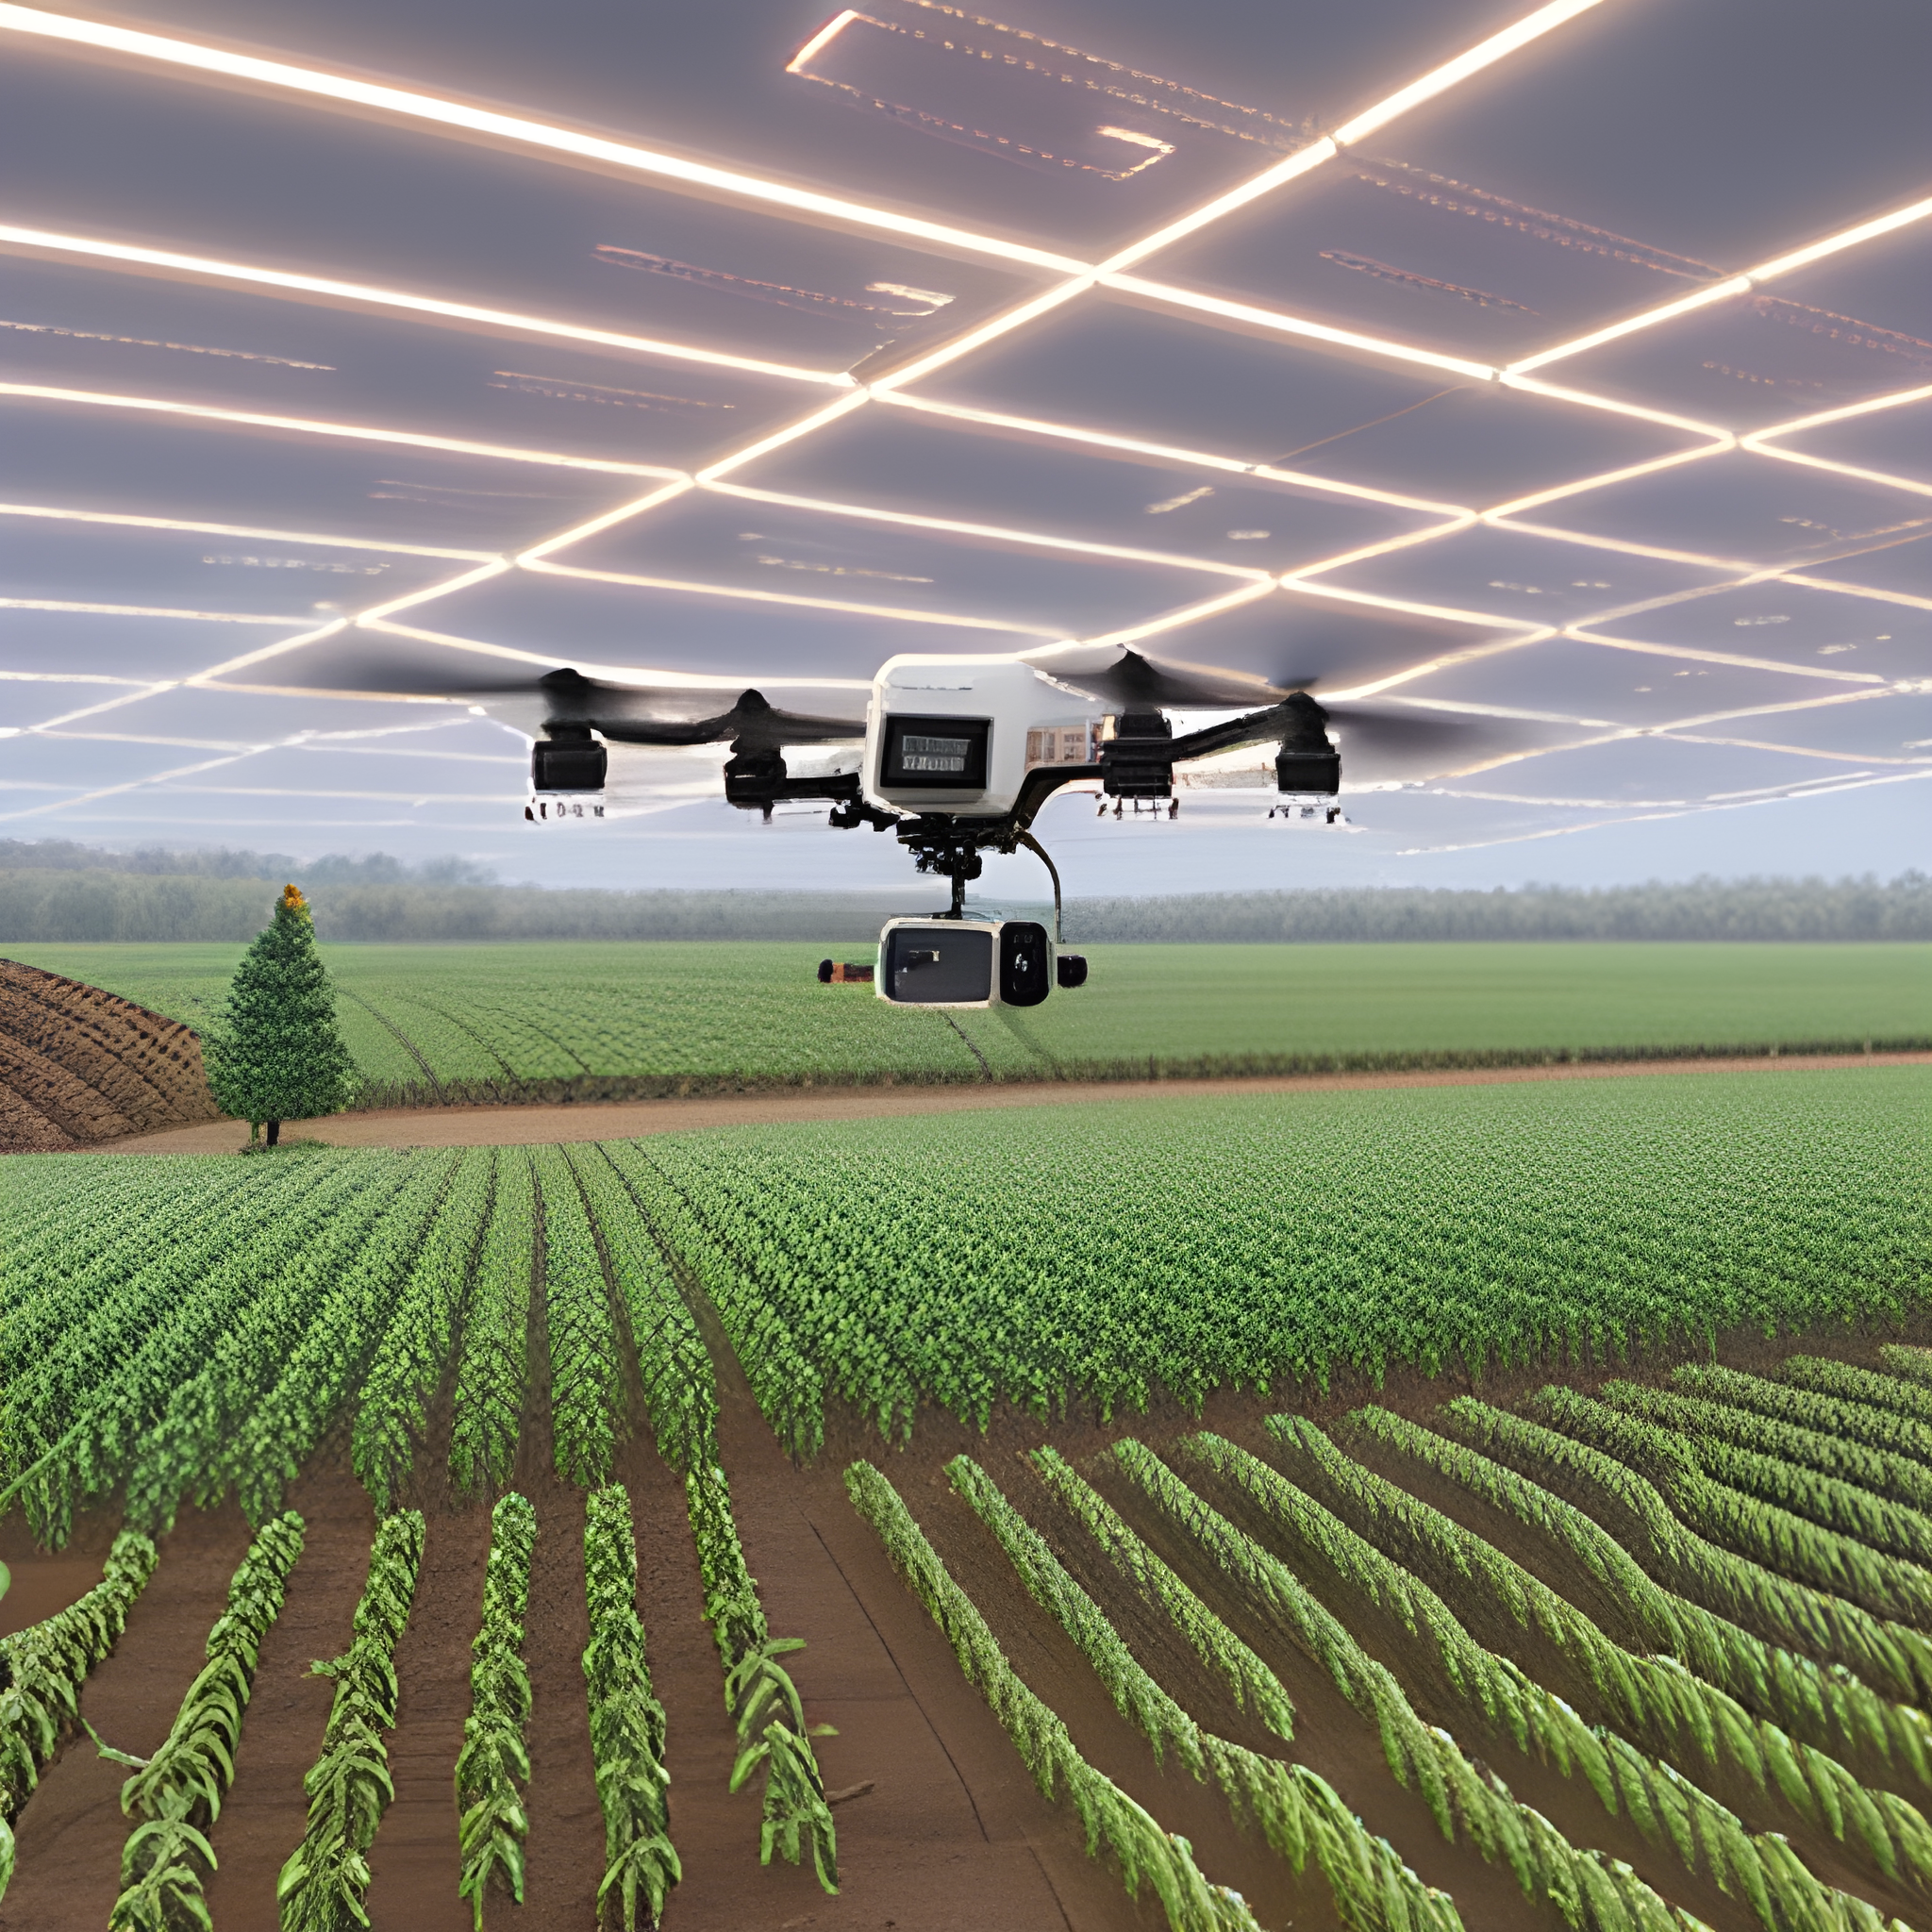 AI 기술이 적용된 현대식 농장을 묘사한 이미지